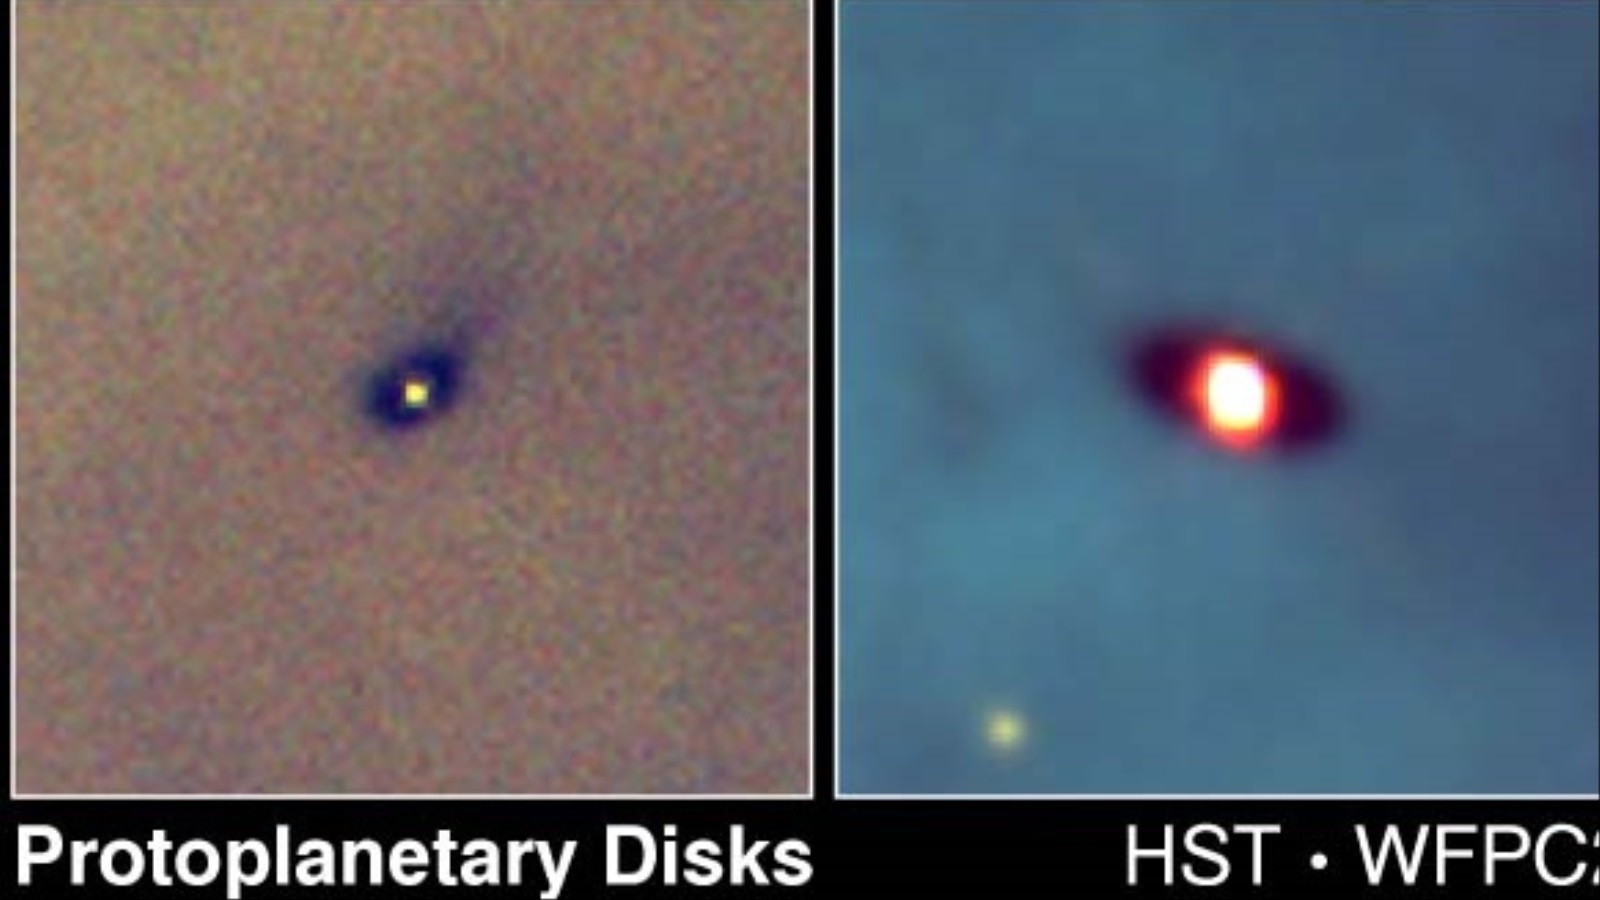 ‪صورة من التلسكوب هابل للأقراص الدوارة حول بعض النجوم في كوكبة الجبار (تلسكوب هابل)‬ صورة من التلسكوب هابل للأقراص الدوارة حول بعض النجوم في كوكبة الجبار (تلسكوب هابل)